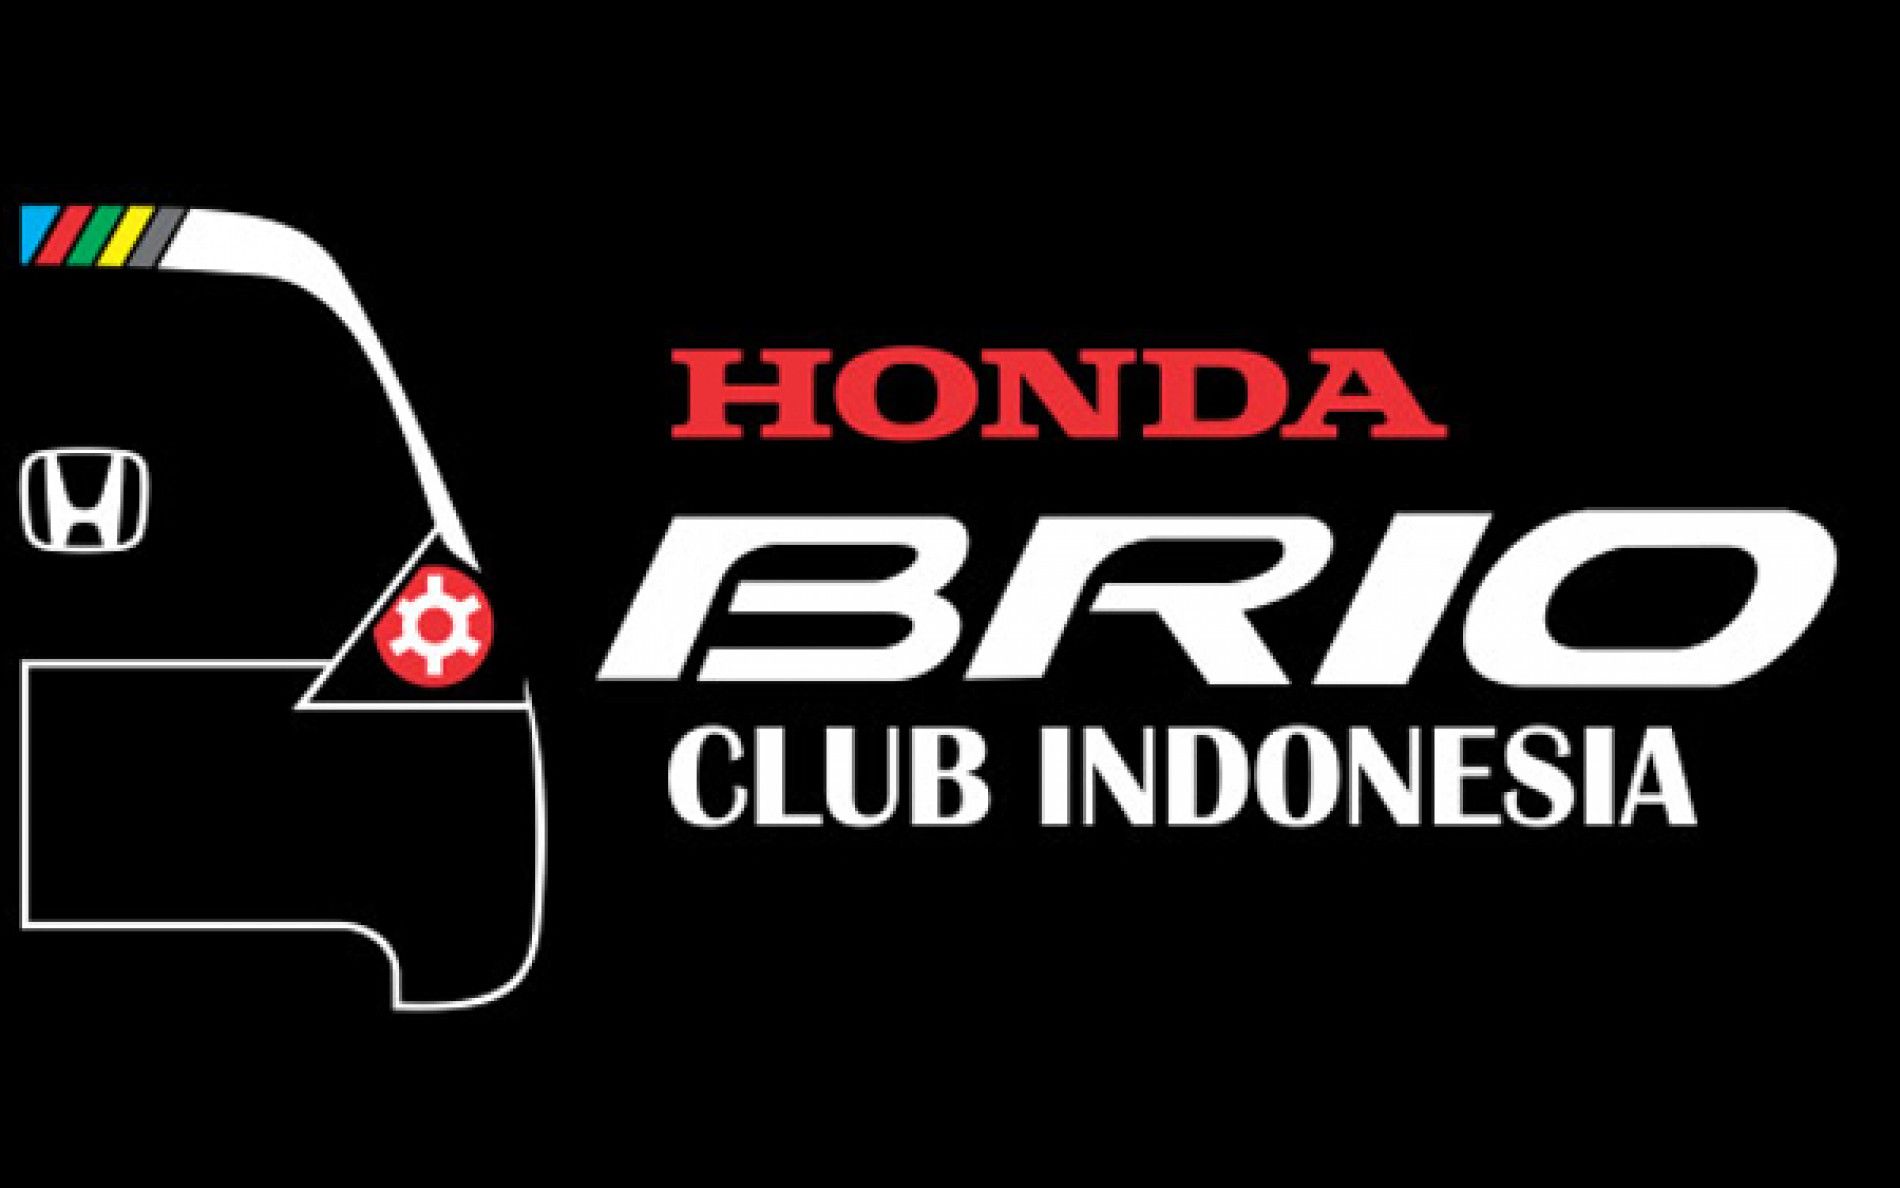 Honda Brio Club Indonesia (HBCI)